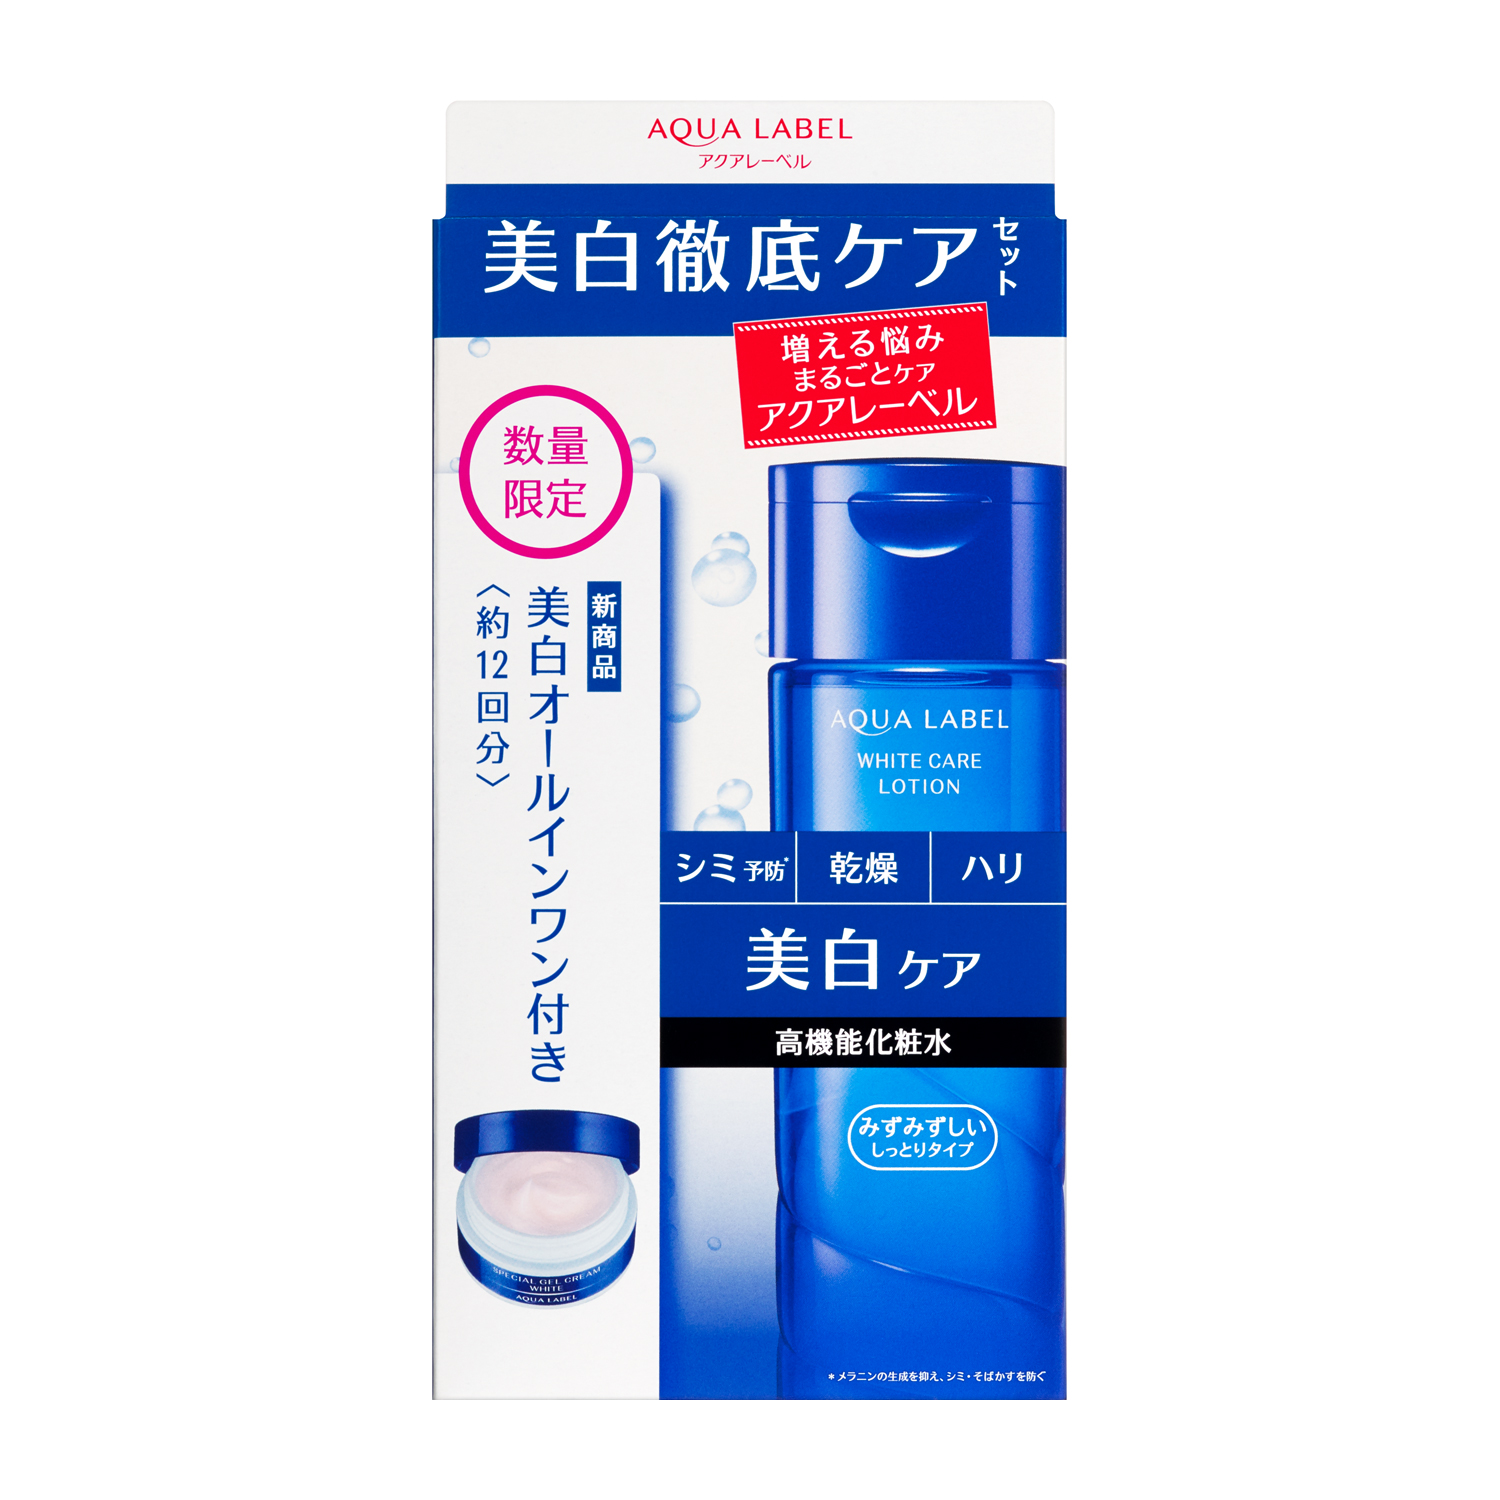 Bộ Nước hoa hồng trắng da Shiseido Aqualabel White Care Lotion 200ml + Kèm khuyến mại